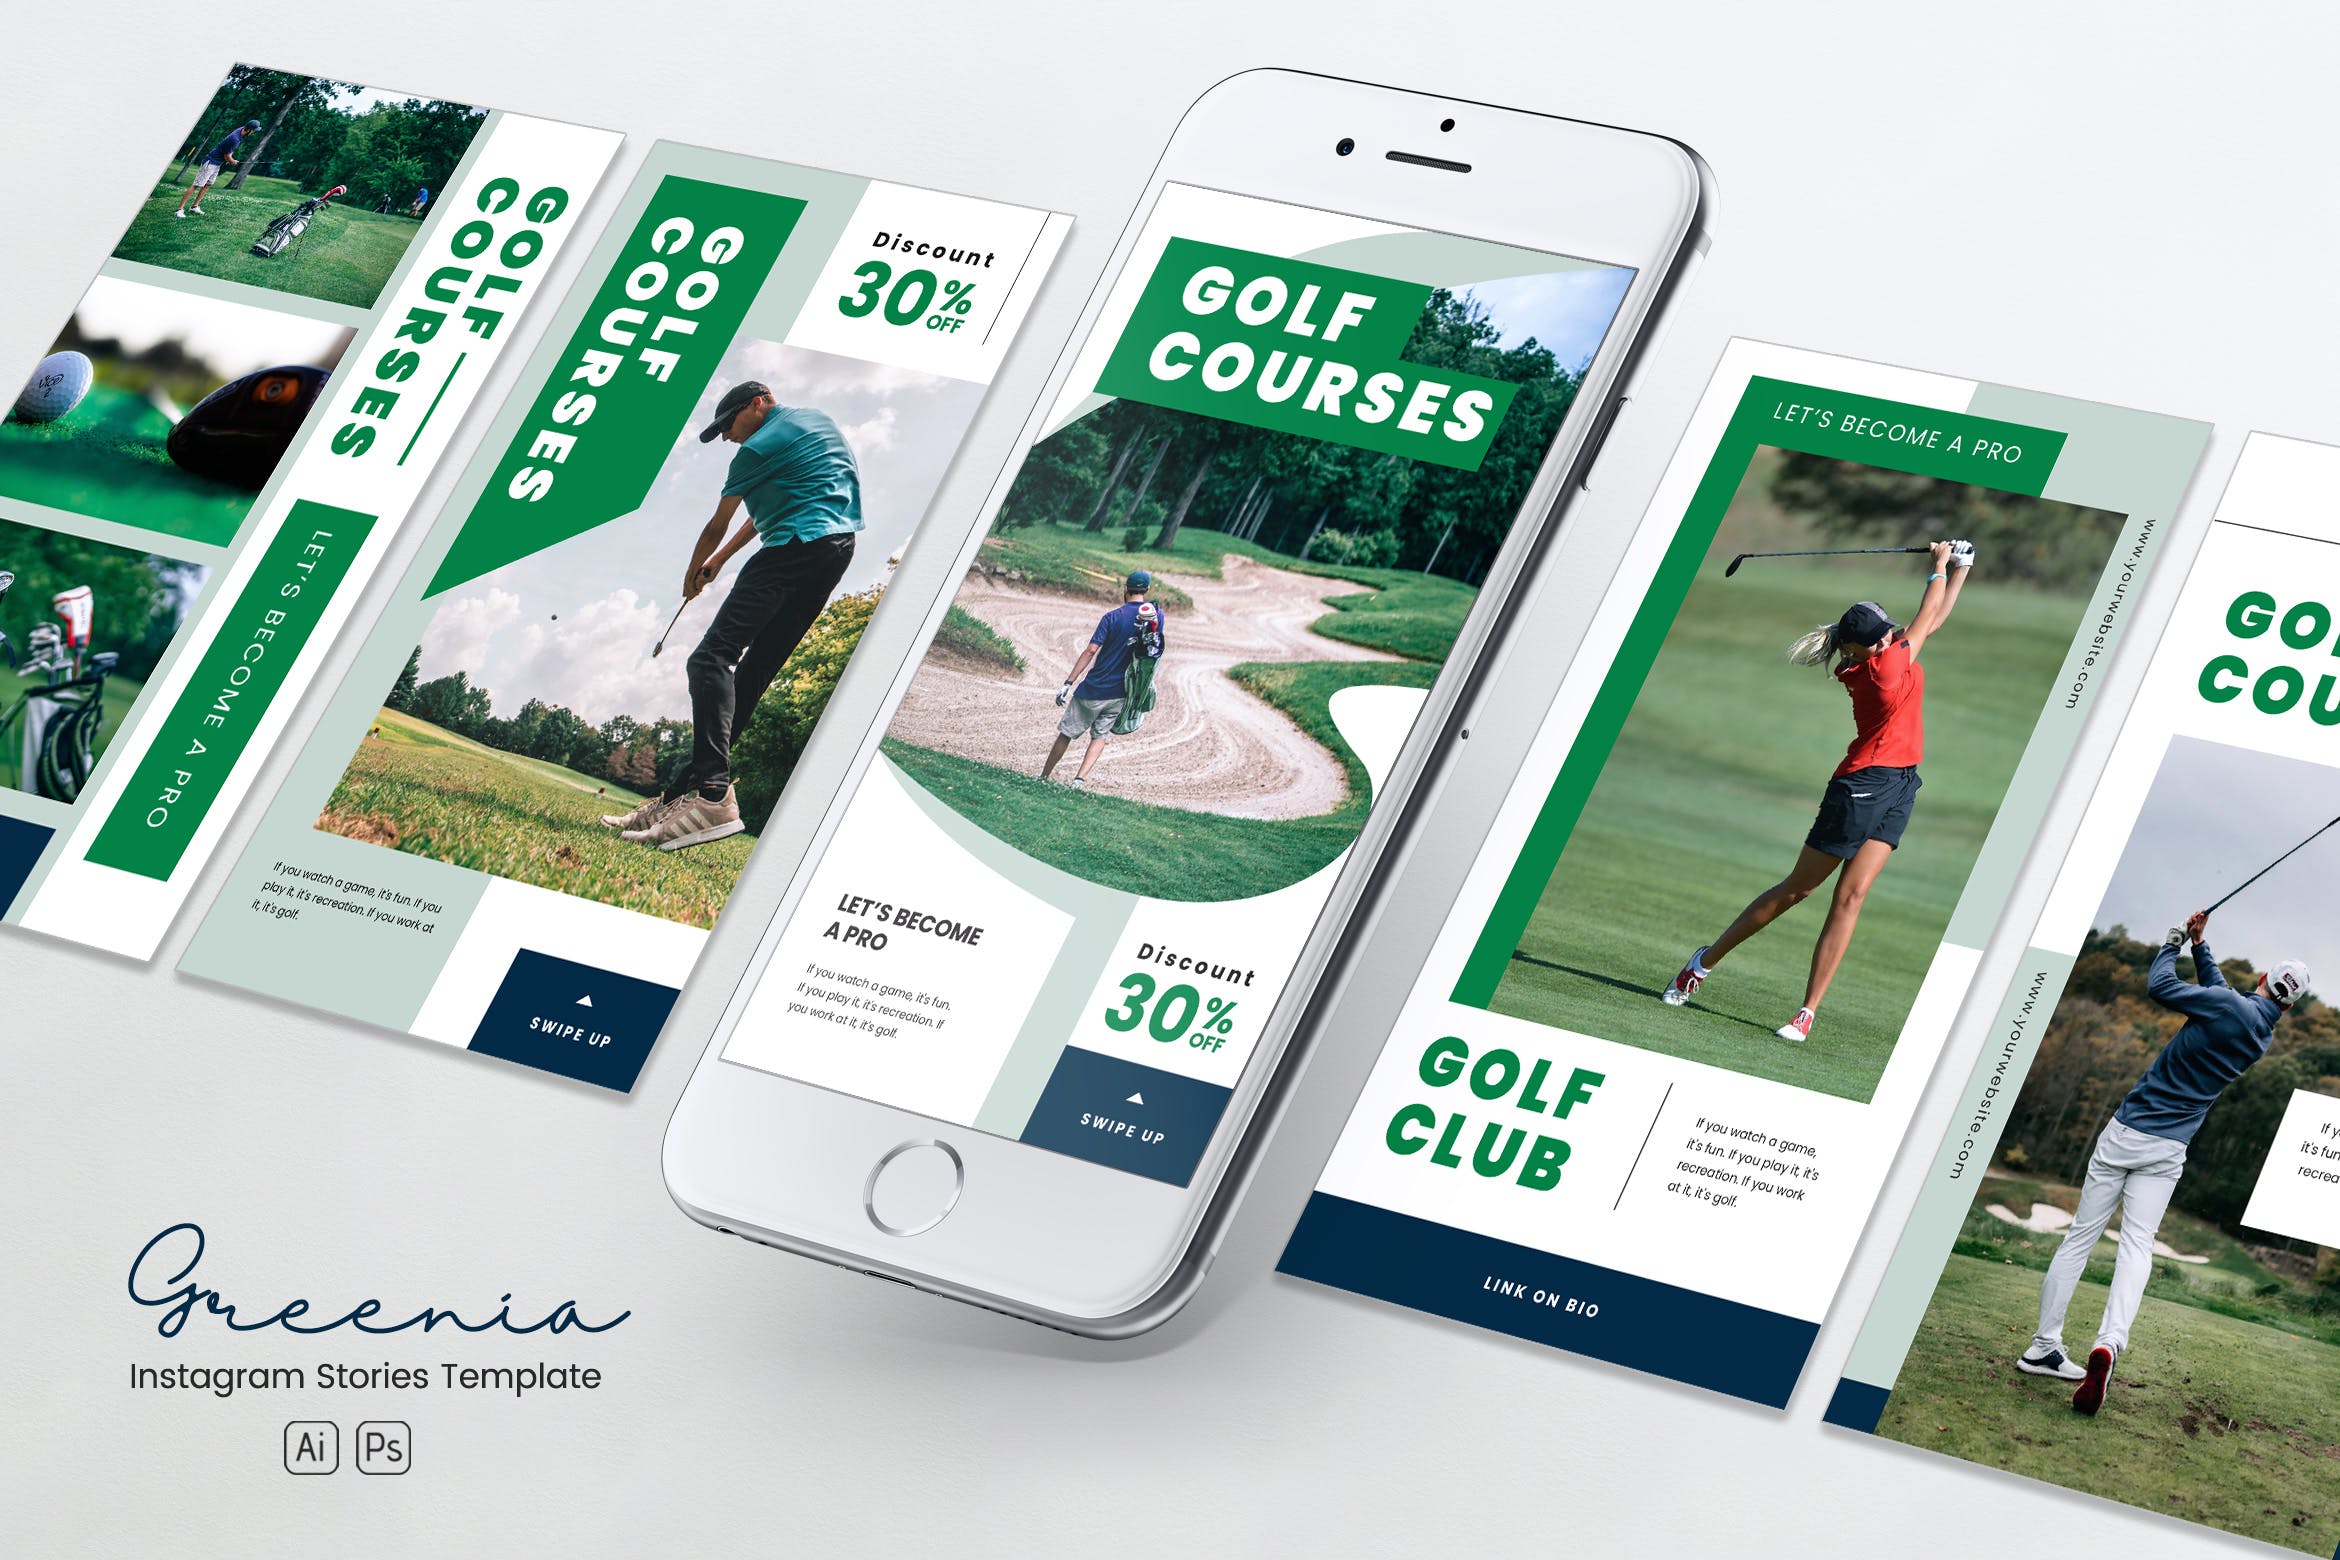 高尔夫球场/俱乐部Instagram社交媒体品牌故事推广PSD&AI模板非凡图库精选 Golf Competition Instagram Stories PSD & AI插图